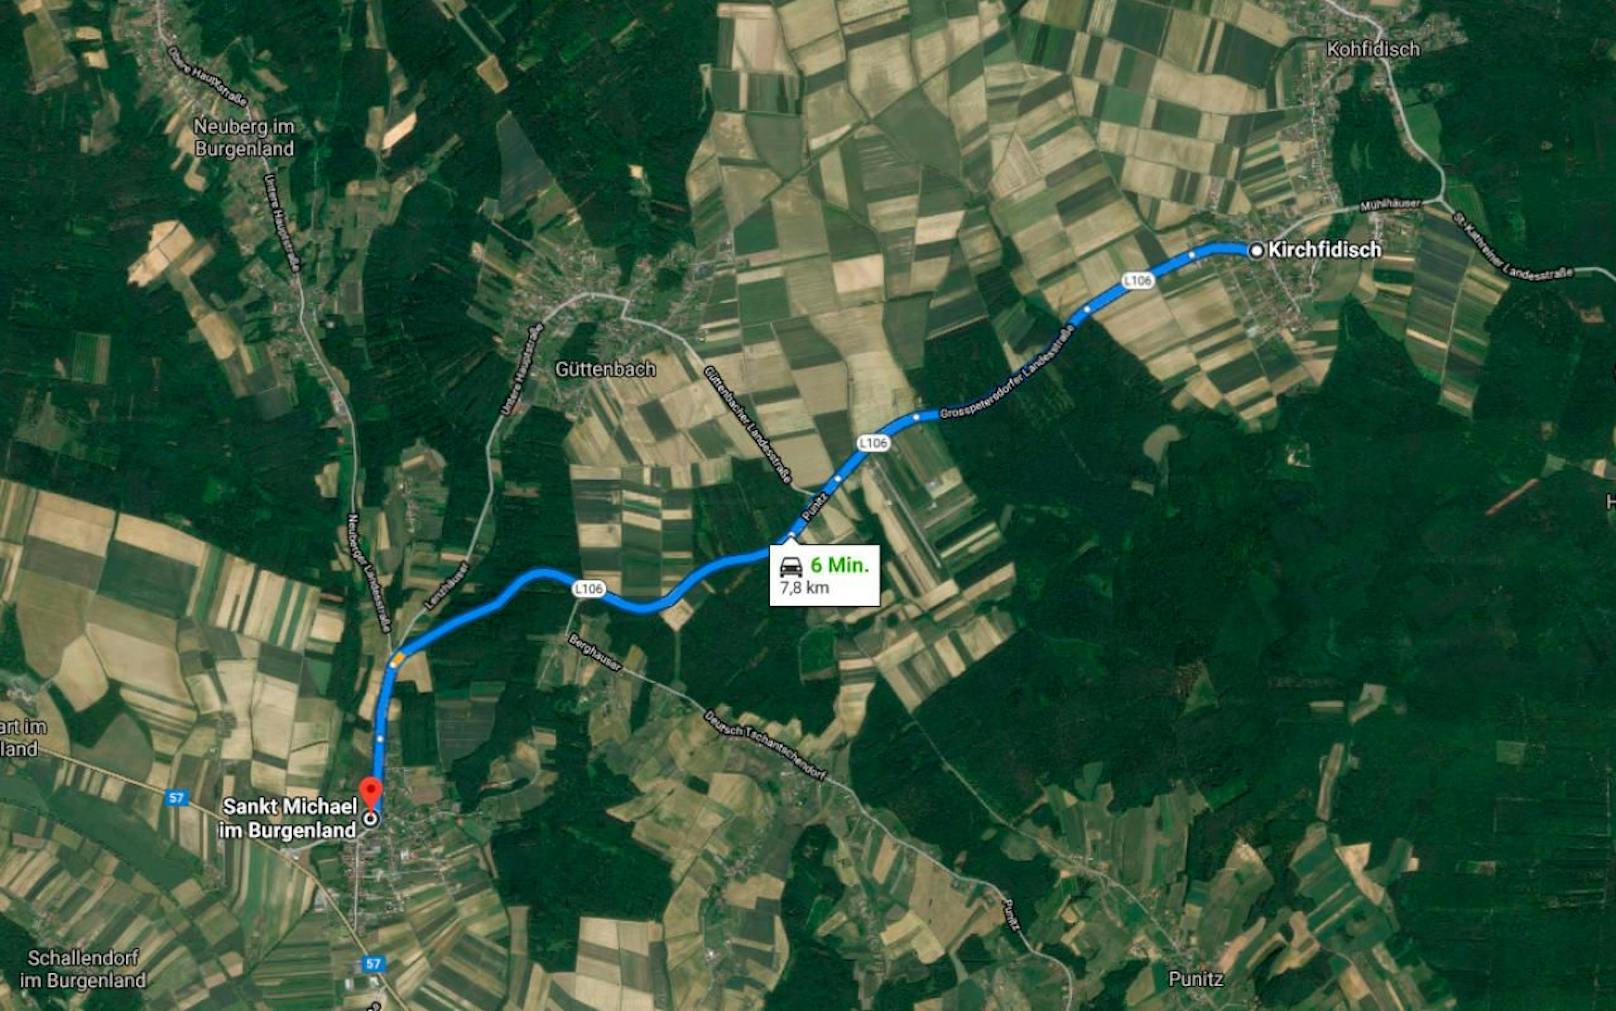 Auf der L106 zwischen Sankt Michael im Burgenland und Kirchfidisch ereignete sich am 29. Jänner 2020 ein tödlicher Unfall.